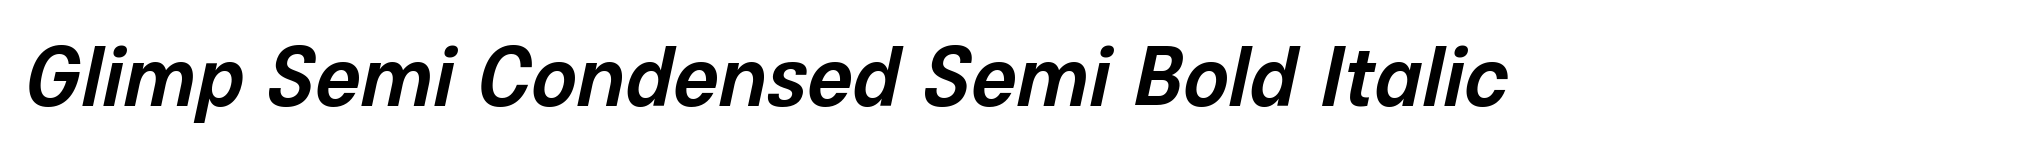 Glimp Semi Condensed Semi Bold Italic image